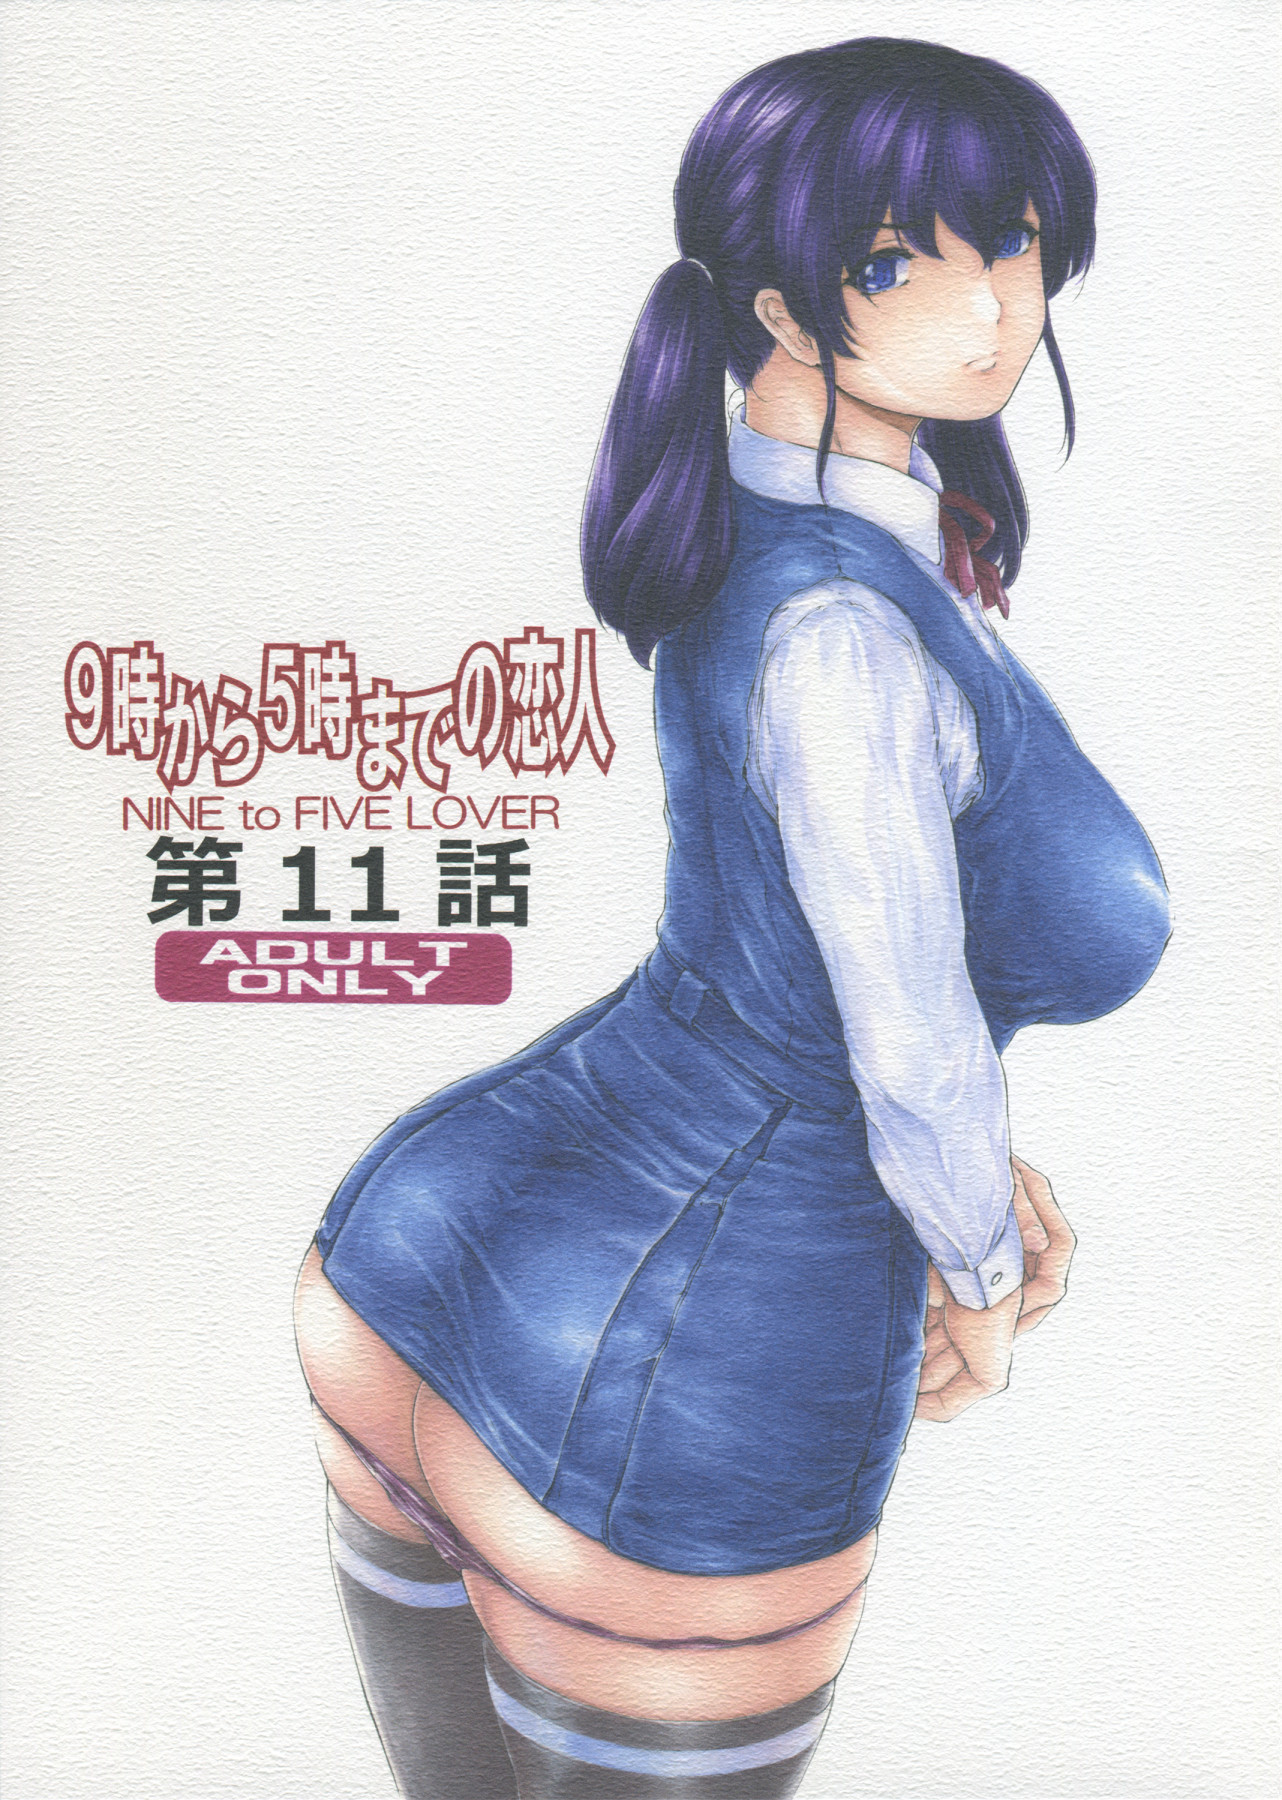 Hentai Manga Comic-9 To 5 Lover  11-Read-1